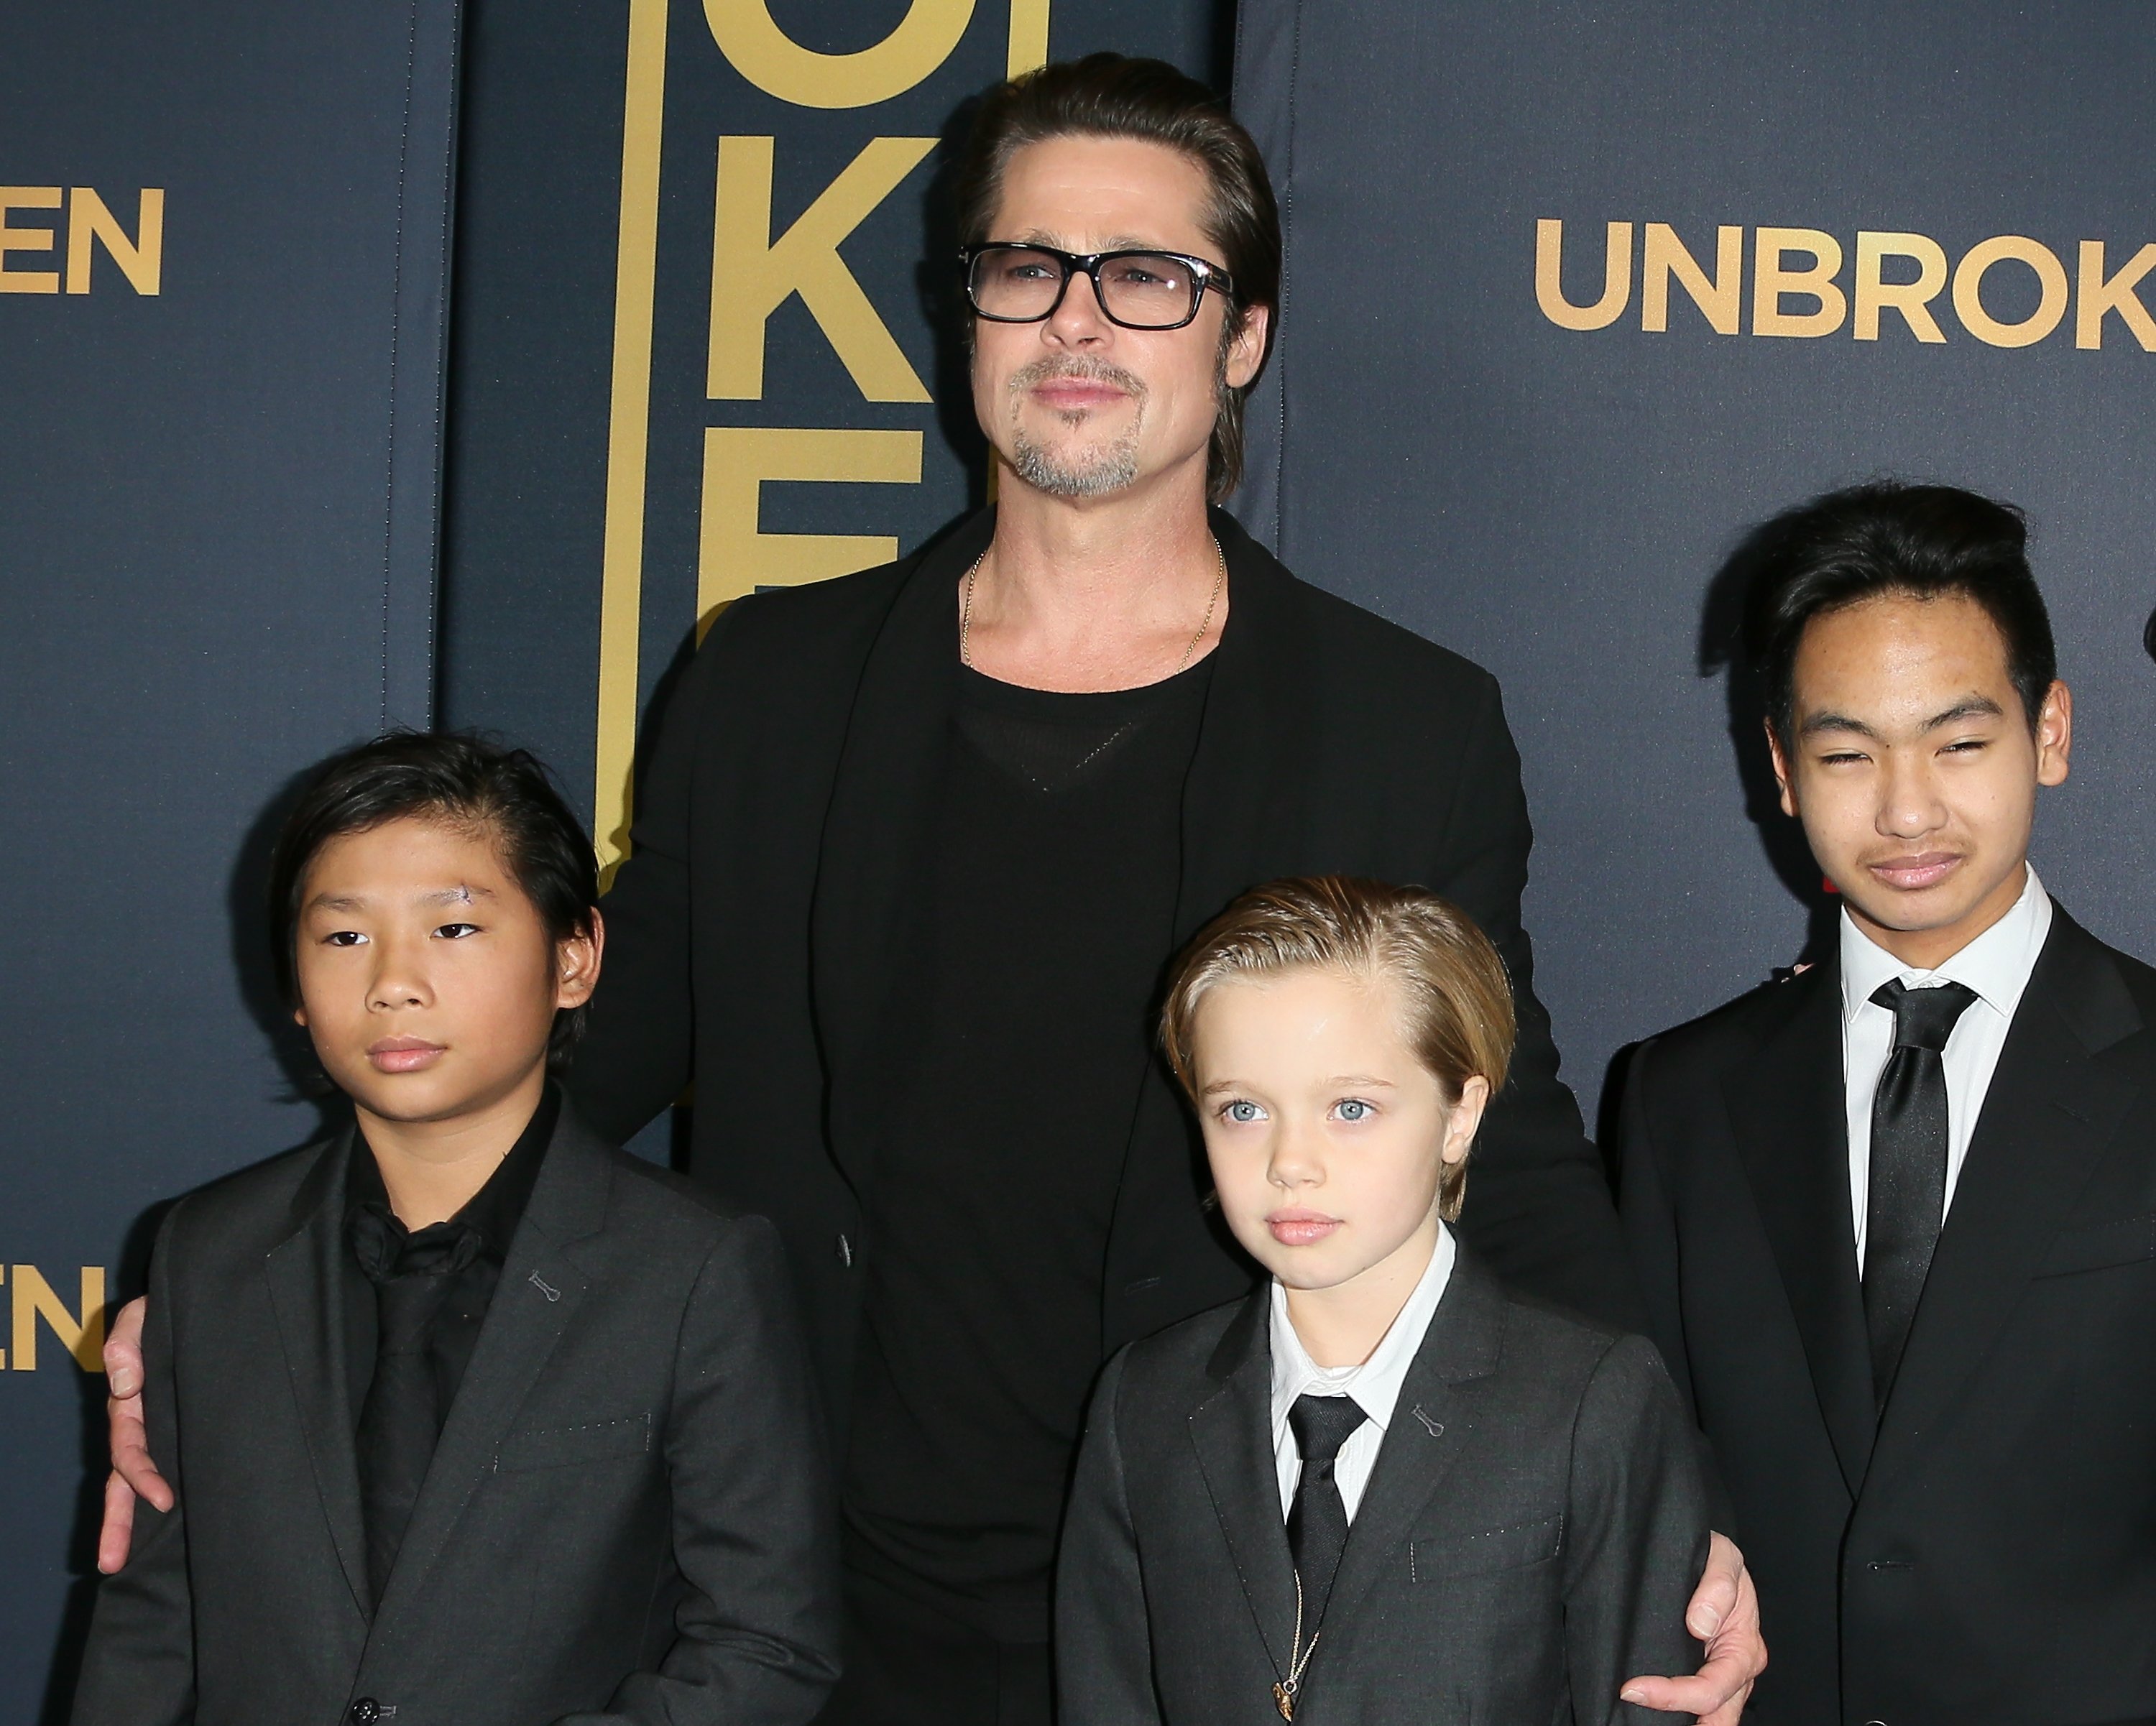 Brad Pitt, Pax Thien Jolie-Pitt, Shiloh Nouvel Jolie-Pitt und Maddox Jolie-Pitt nehmen an der Premiere von "Unbroken" am 15. Dezember 2014 im TCL Chinese Theatre IMAX in Hollywood, Kalifornien, teil. | Quelle: Getty Images